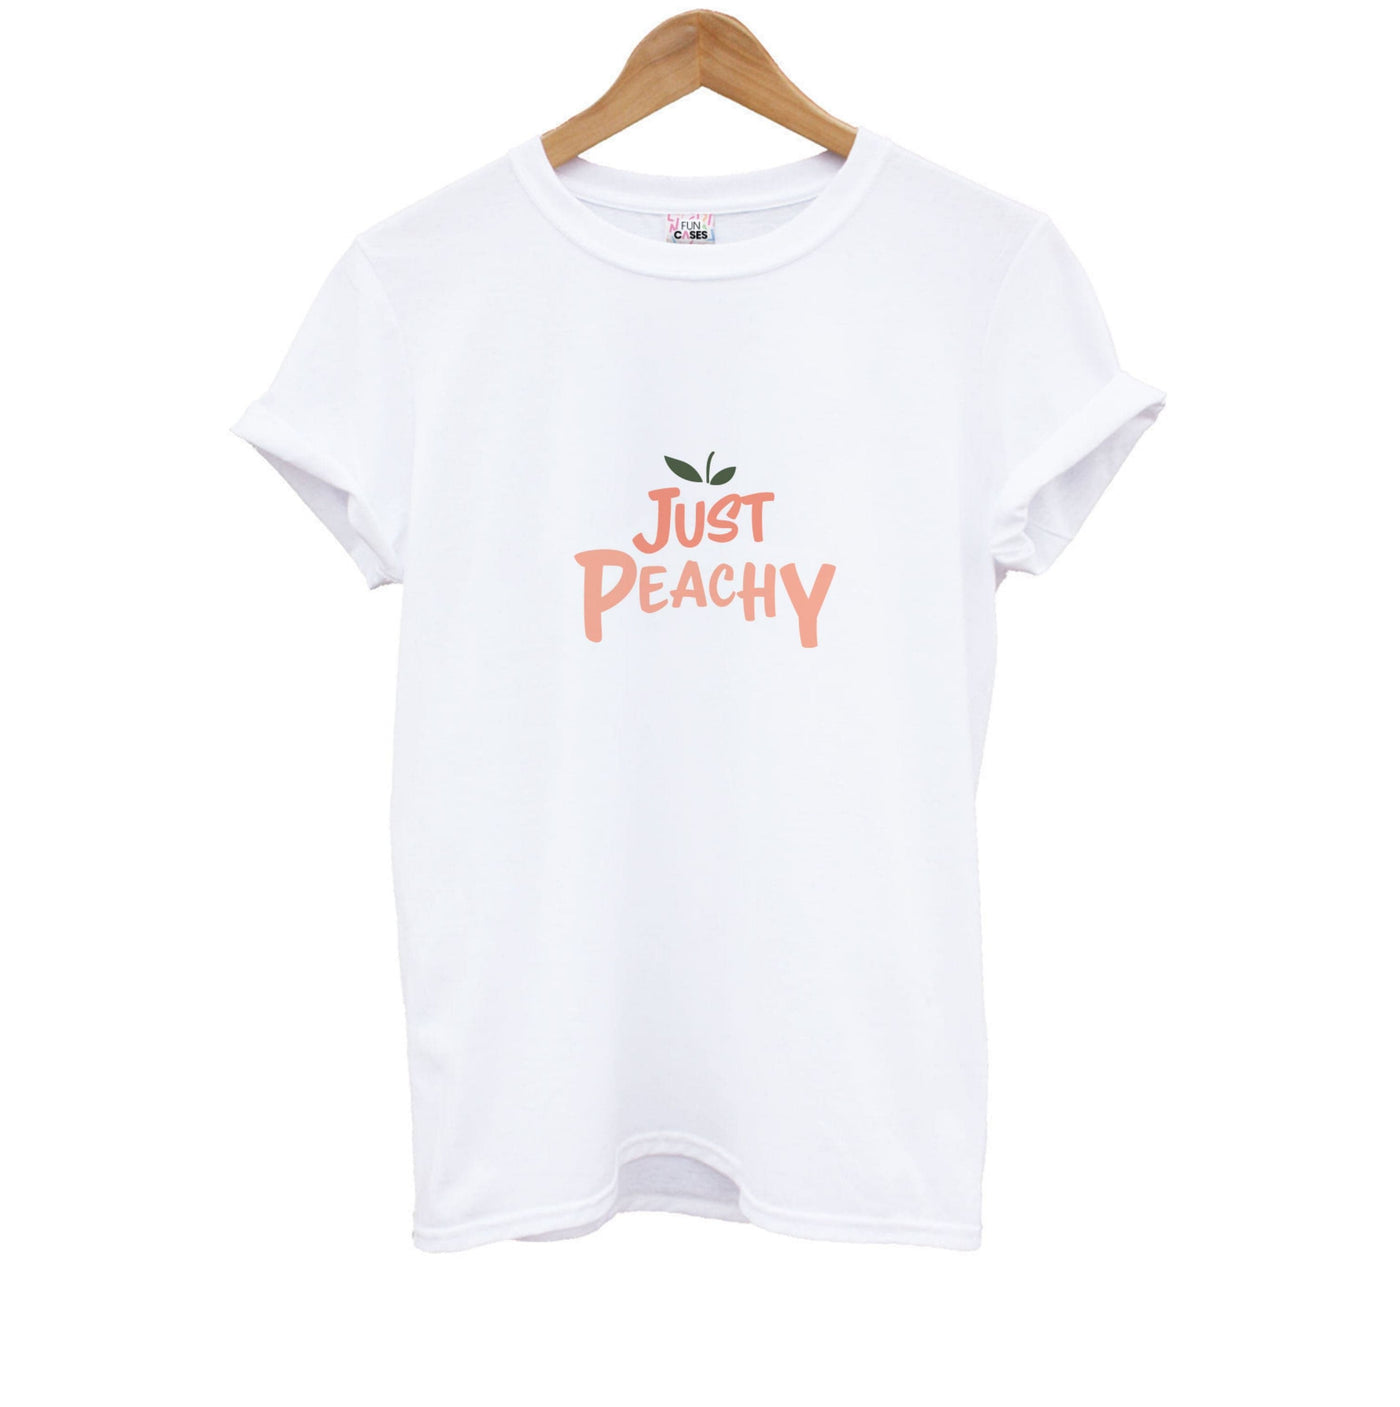 Just Peachy - Hot Girl Summer Kids T-Shirt